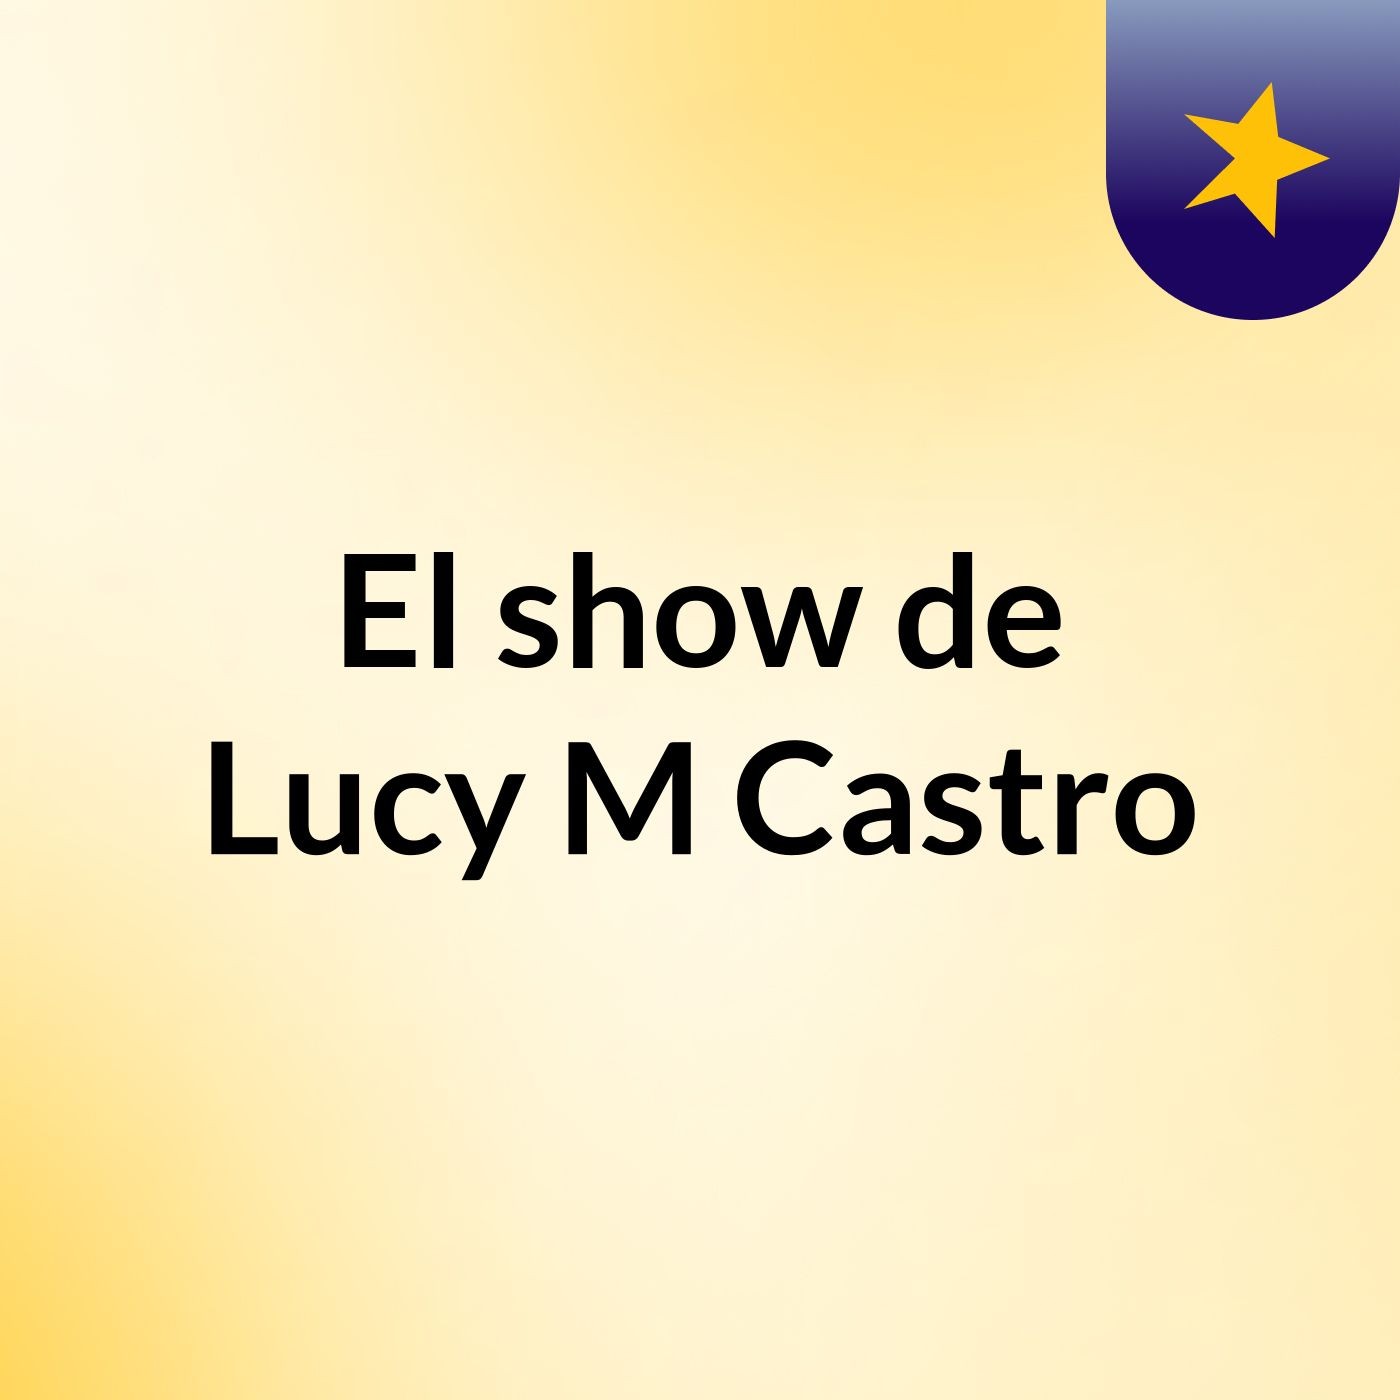 El show de Lucy M Castro